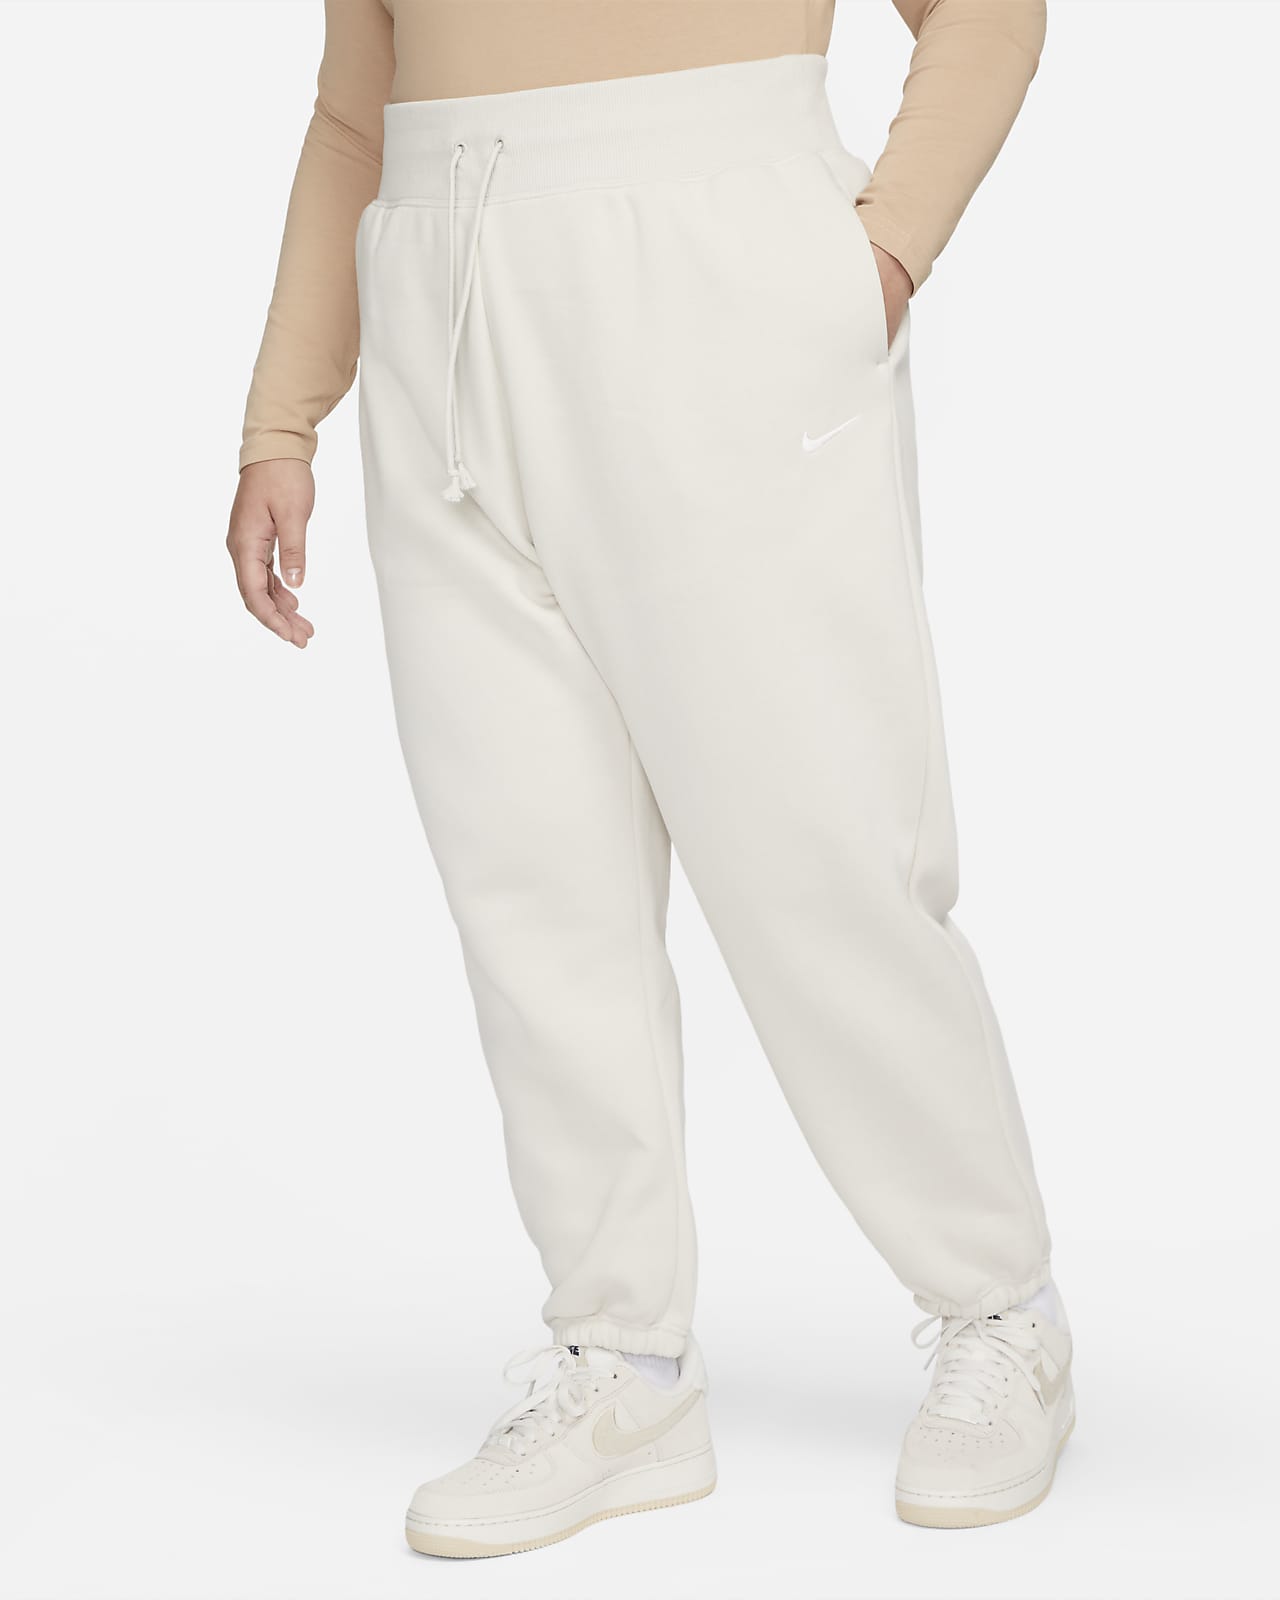 Γυναικείο ψηλόμεσο παντελόνι φόρμας σε φαρδιά γραμμή Nike Sportswear Phoenix Fleece (μεγάλα μεγέθη)